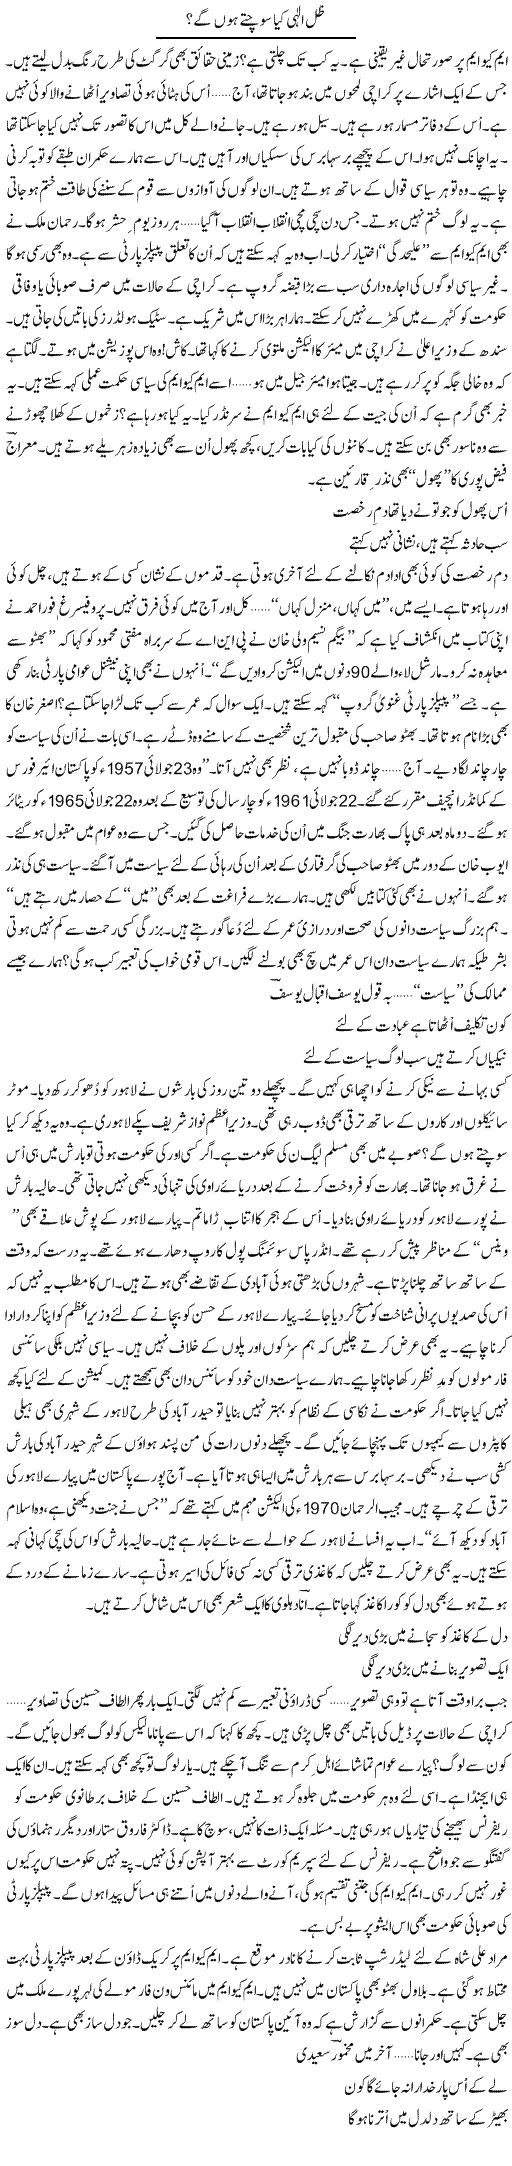 Zill e ilahi kia sochtay hongay? | Ejaz Hafeez Khan | Daily Urdu Columns